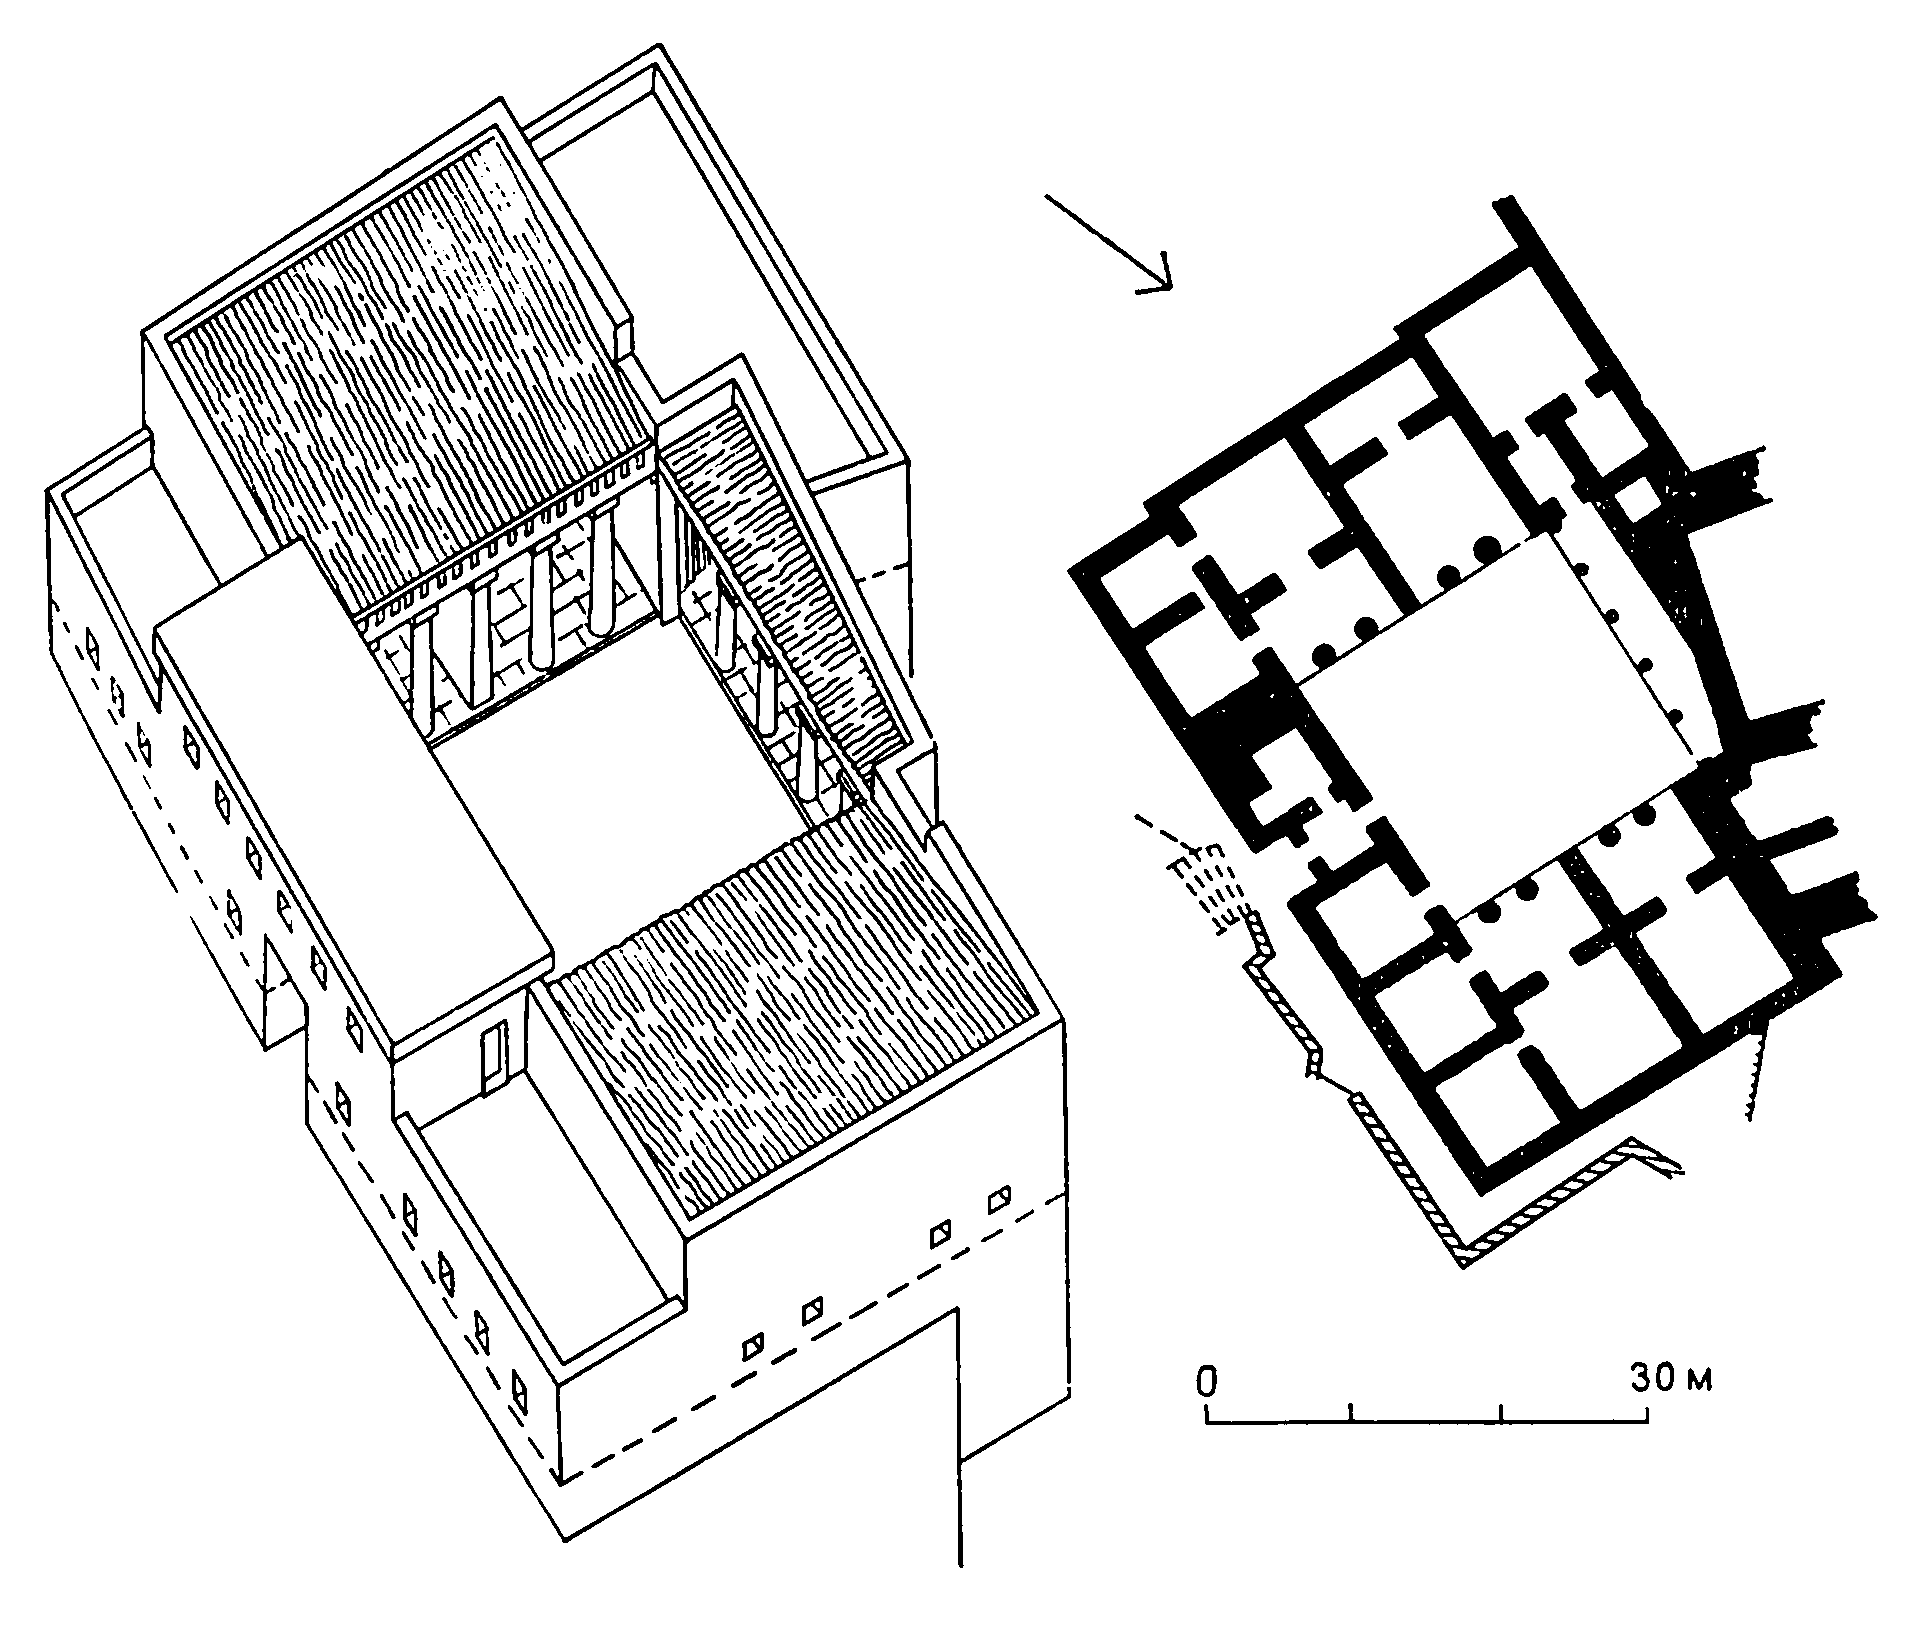 18. Лариса. Дворец, около 350 г. до н. э. Пример формирования жилища перистильного типа